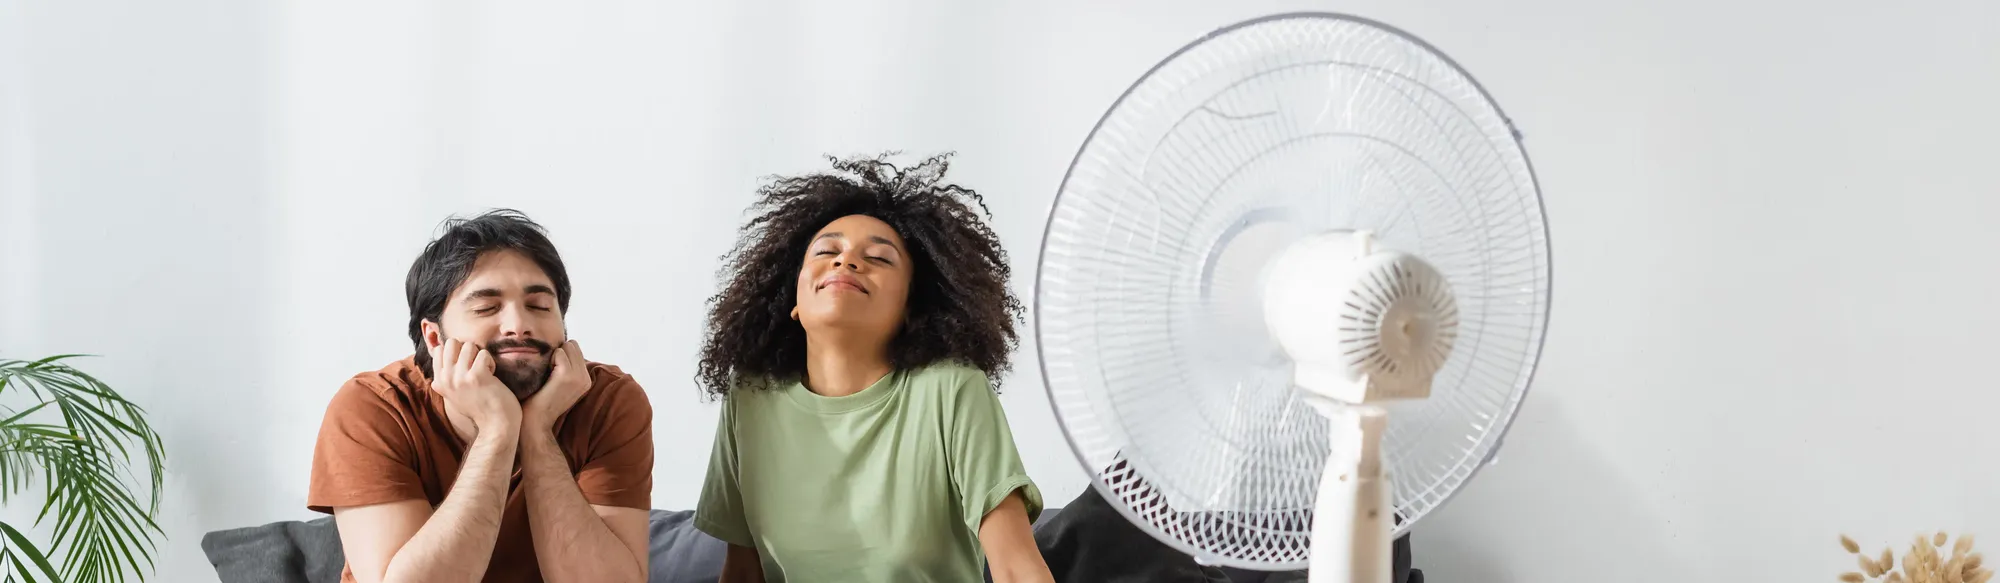 Como economizar energia no calor: 6 dicas para gastar menos no verão